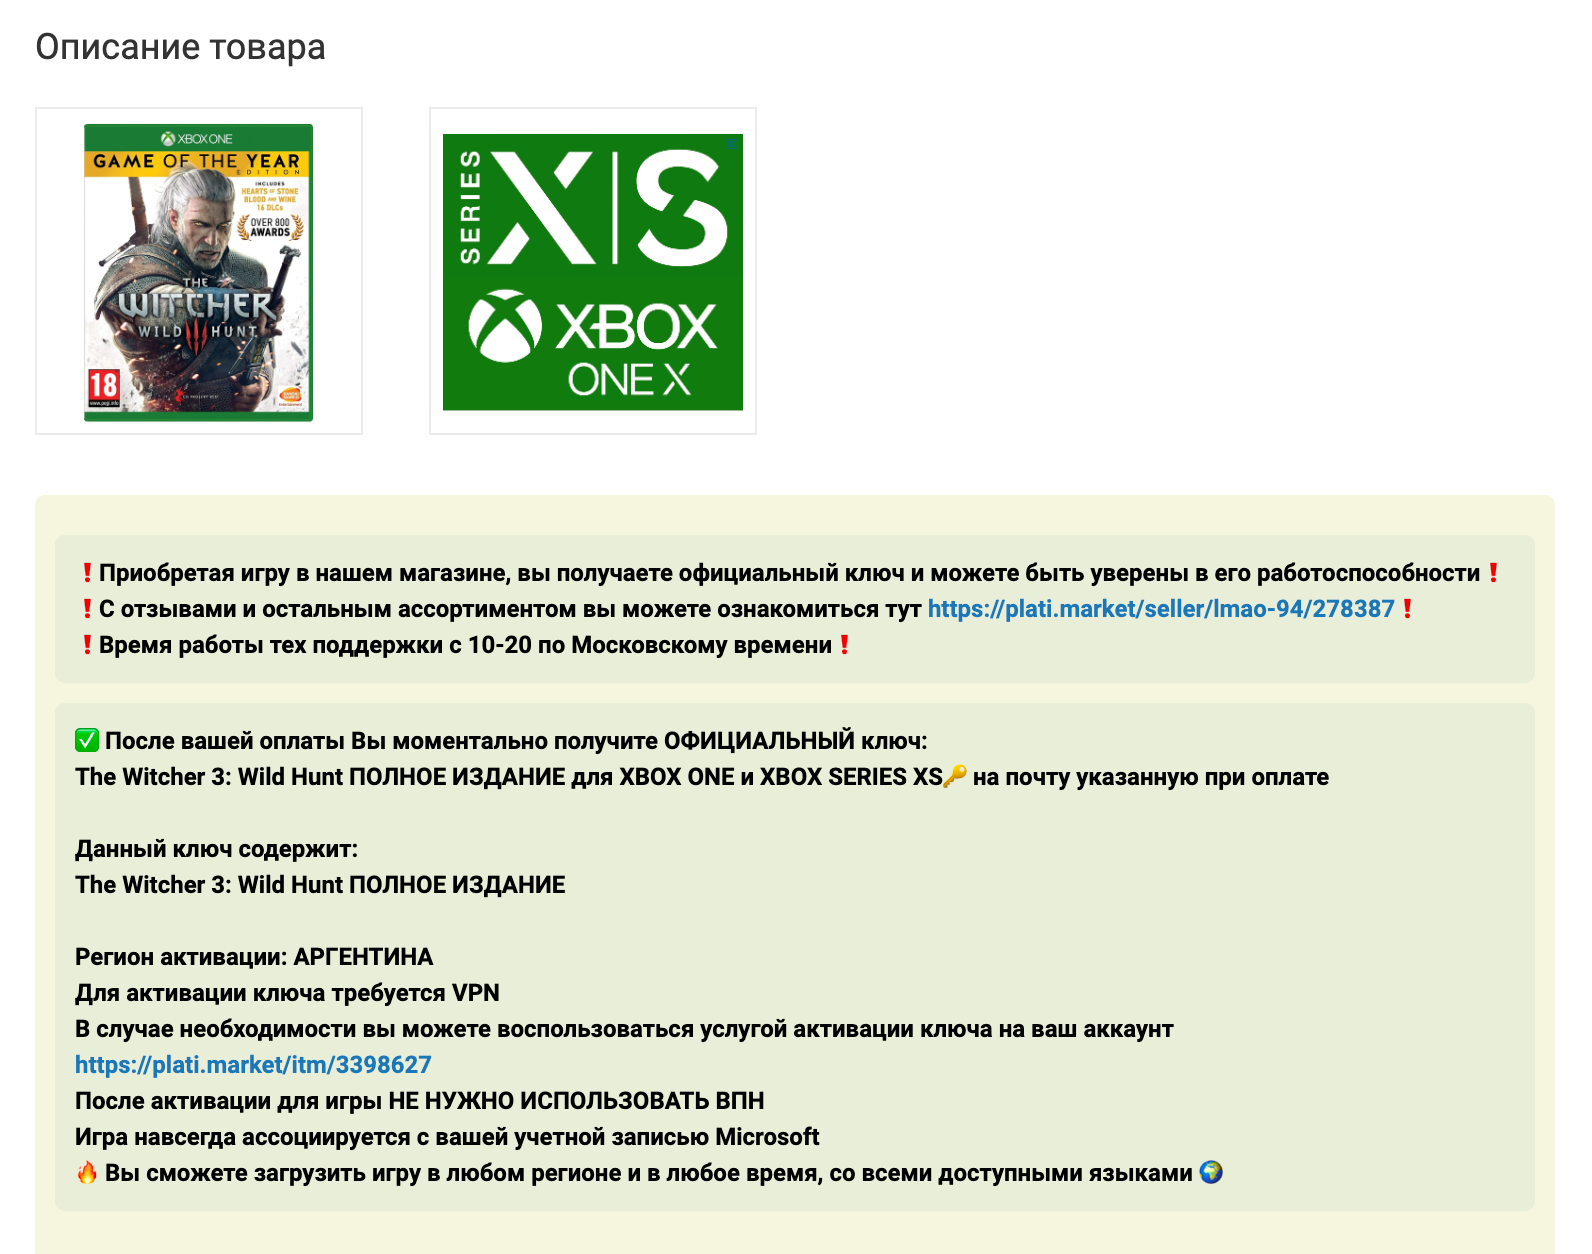 Повторная загрузка купленного контента на новую или восстановленную консоль Xbox 360